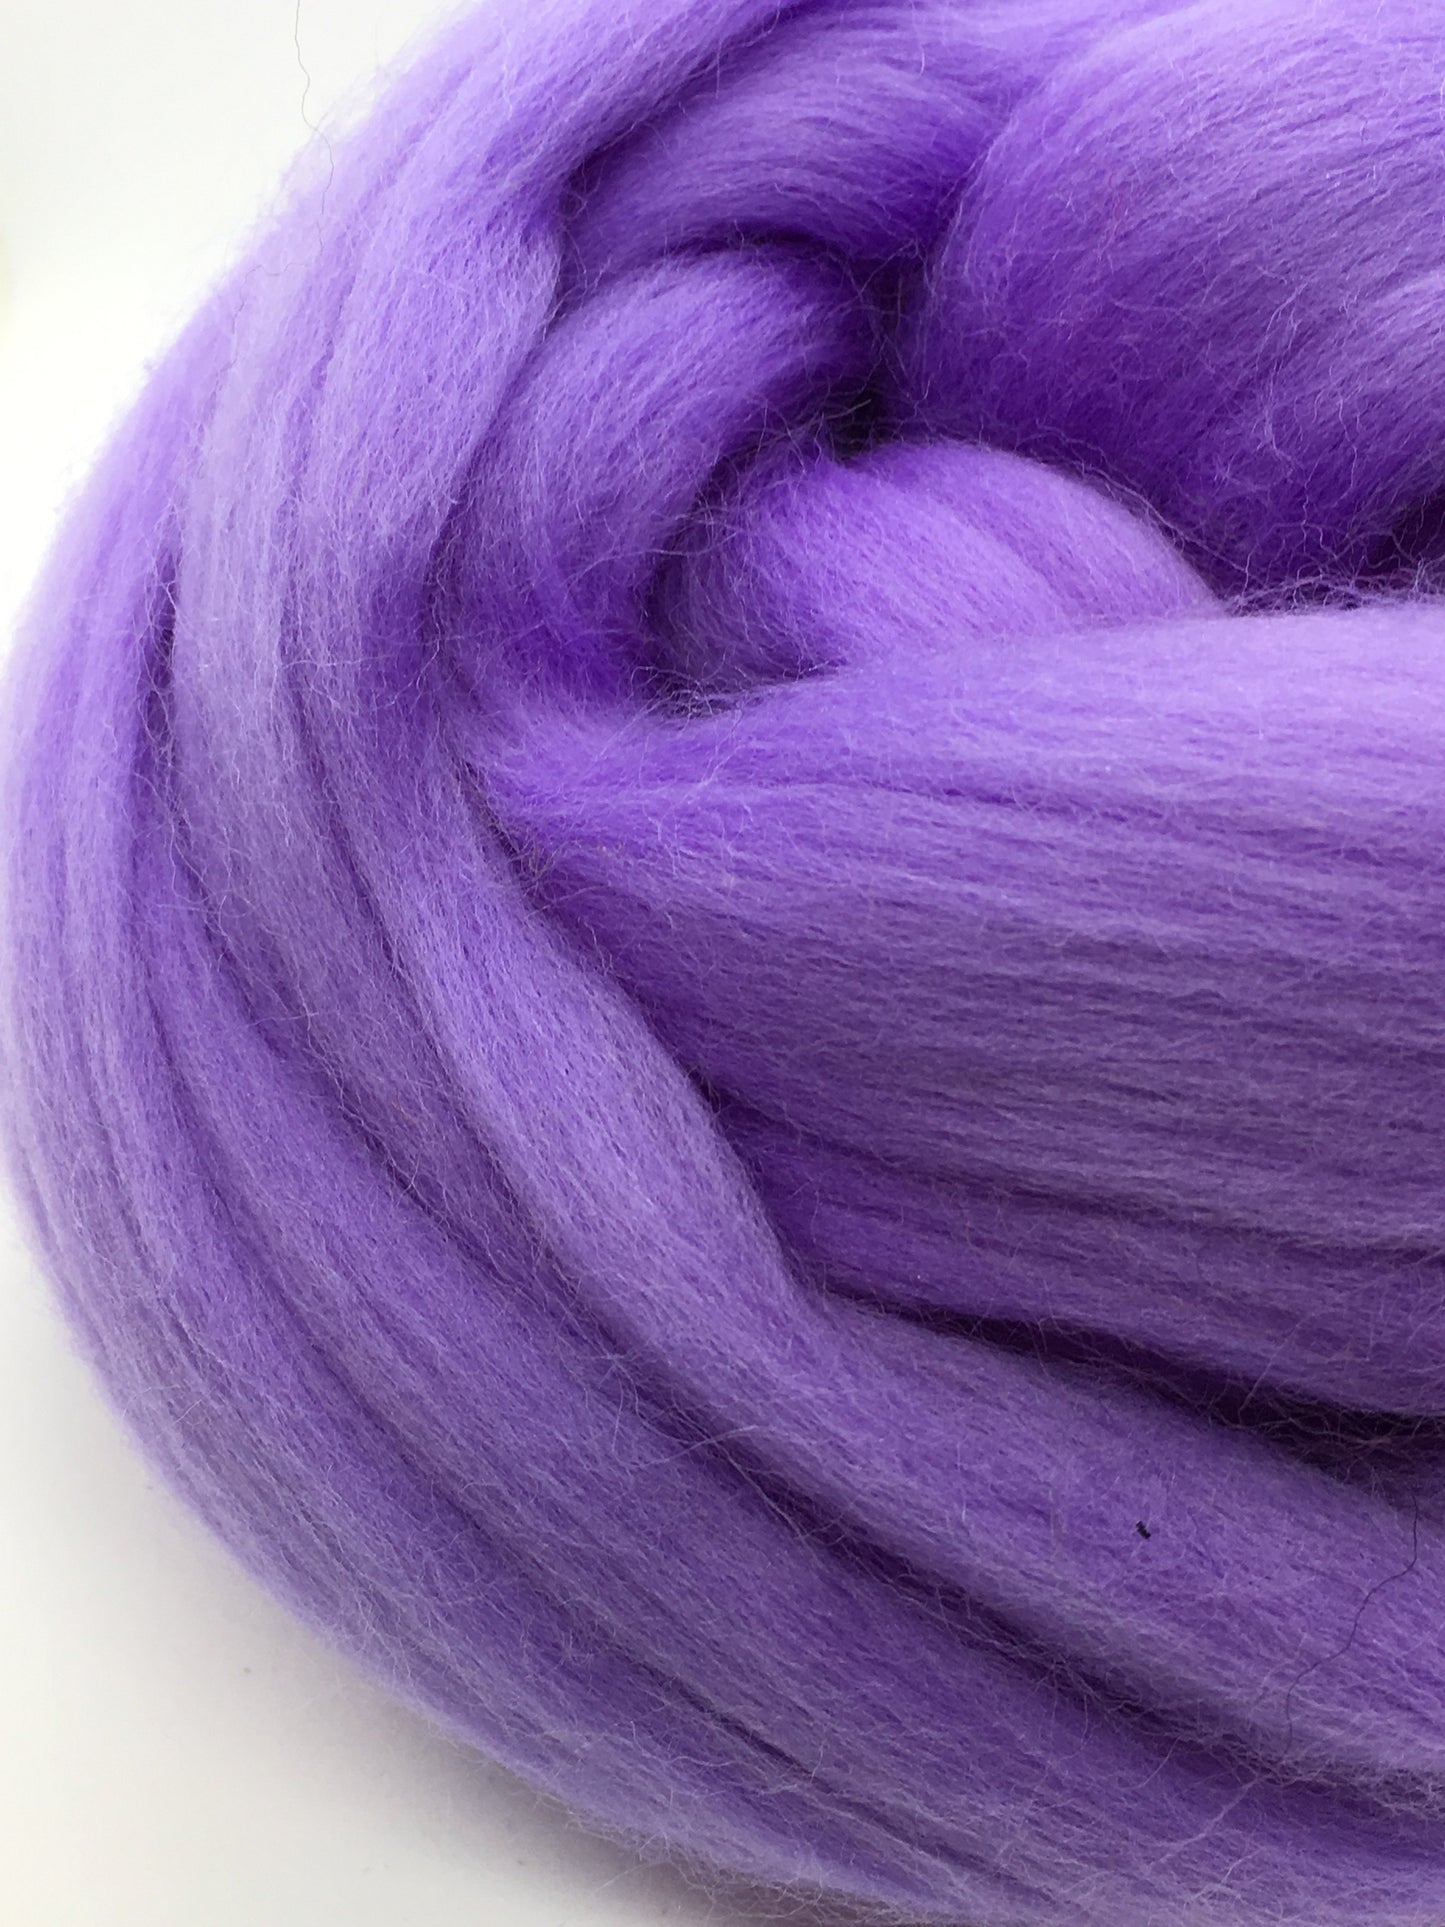 Periwinkle Purple Wool Roving